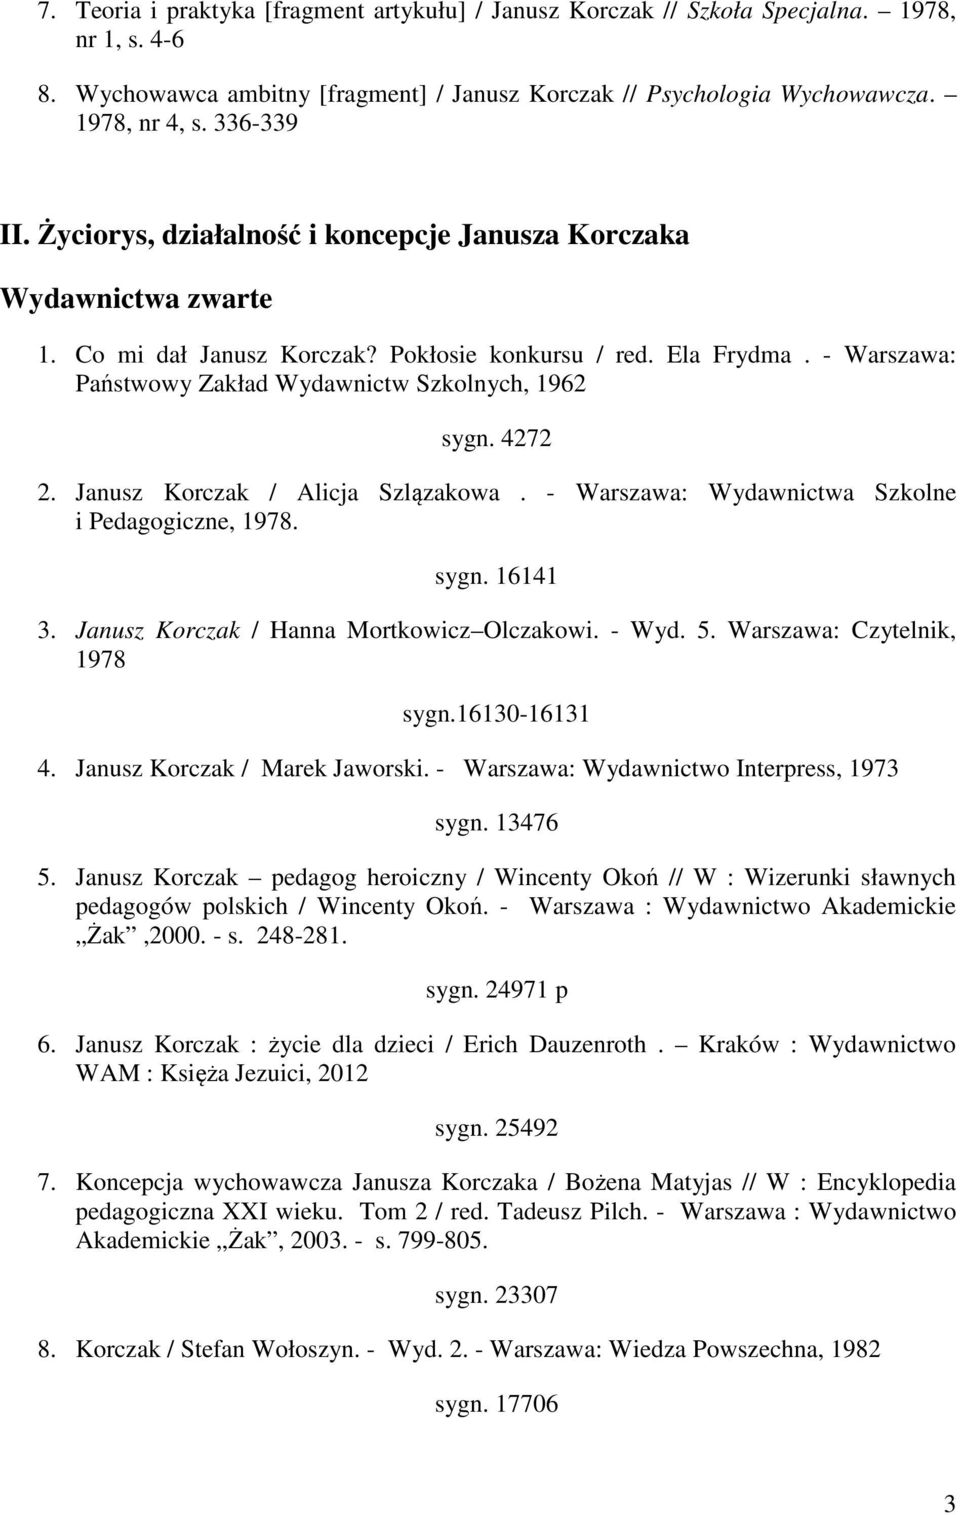 - Warszawa: Państwowy Zakład Wydawnictw Szkolnych, 1962 sygn. 4272 2. Janusz Korczak / Alicja Szlązakowa. - Warszawa: Wydawnictwa Szkolne i Pedagogiczne, 1978. sygn. 16141 3.